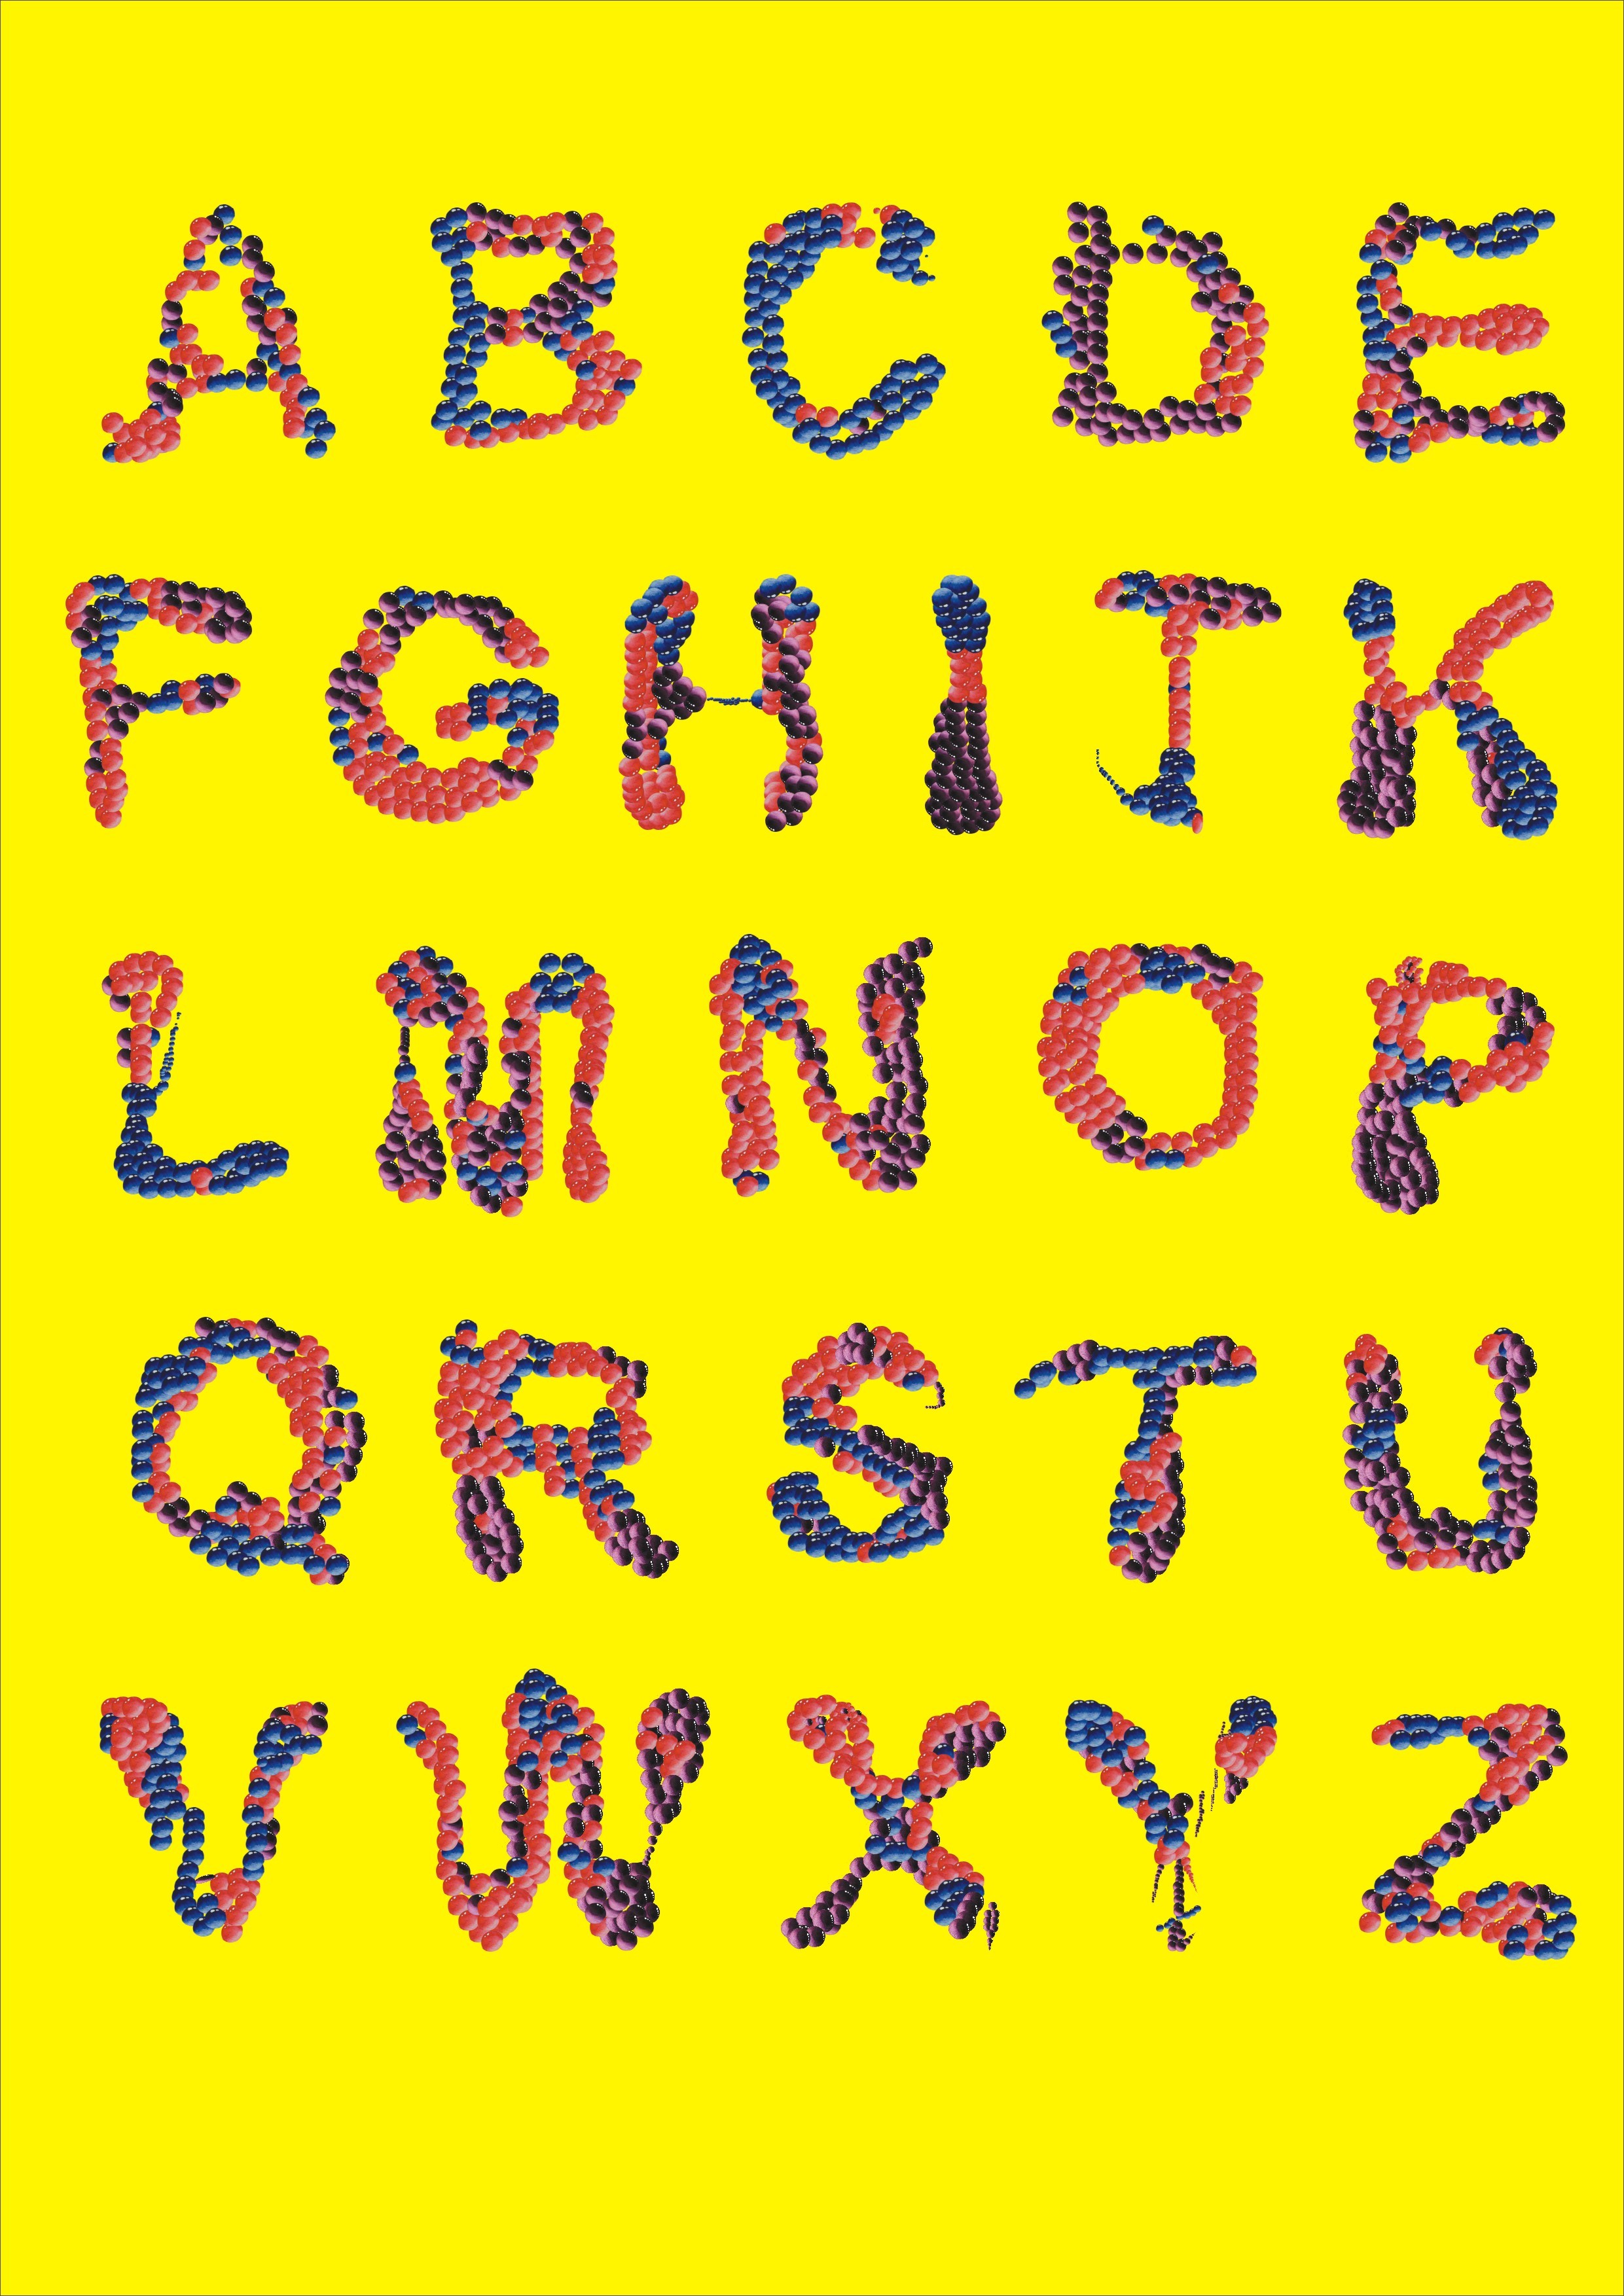 26个字母设计 abcdefghijk|平面|图案|404139214